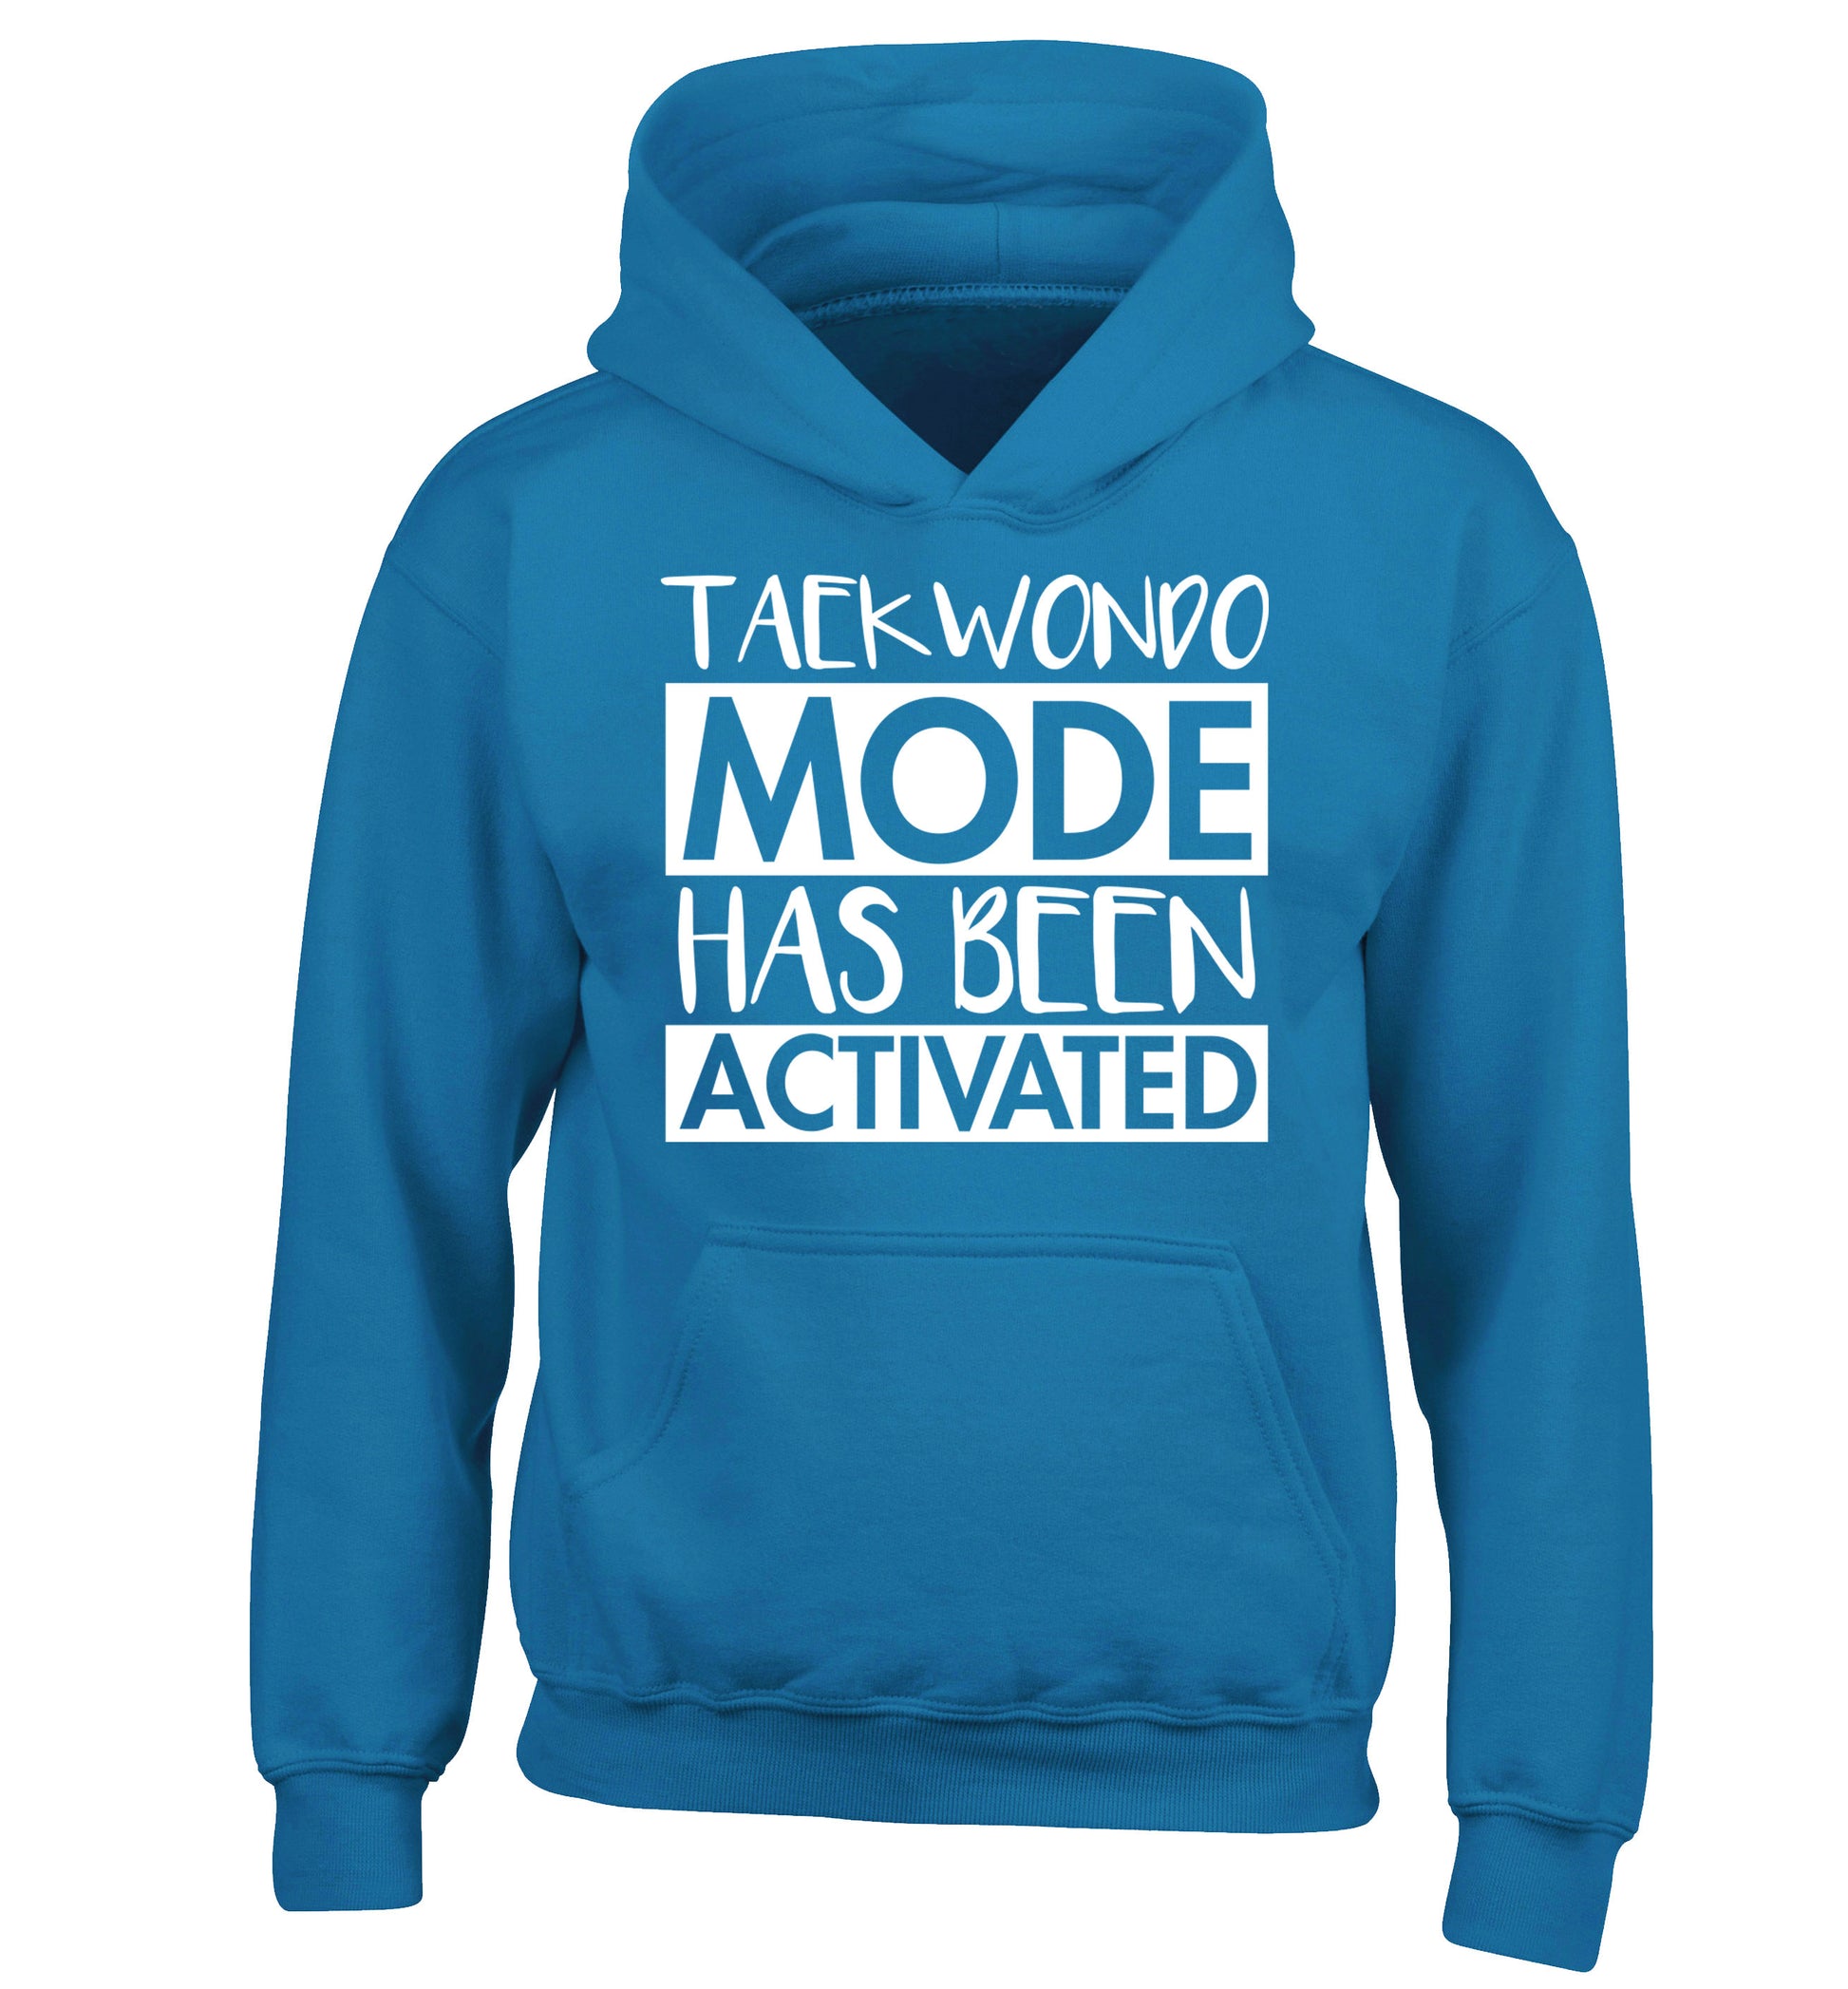 Taekwondo mode activated children's blue hoodie 12-14 Years